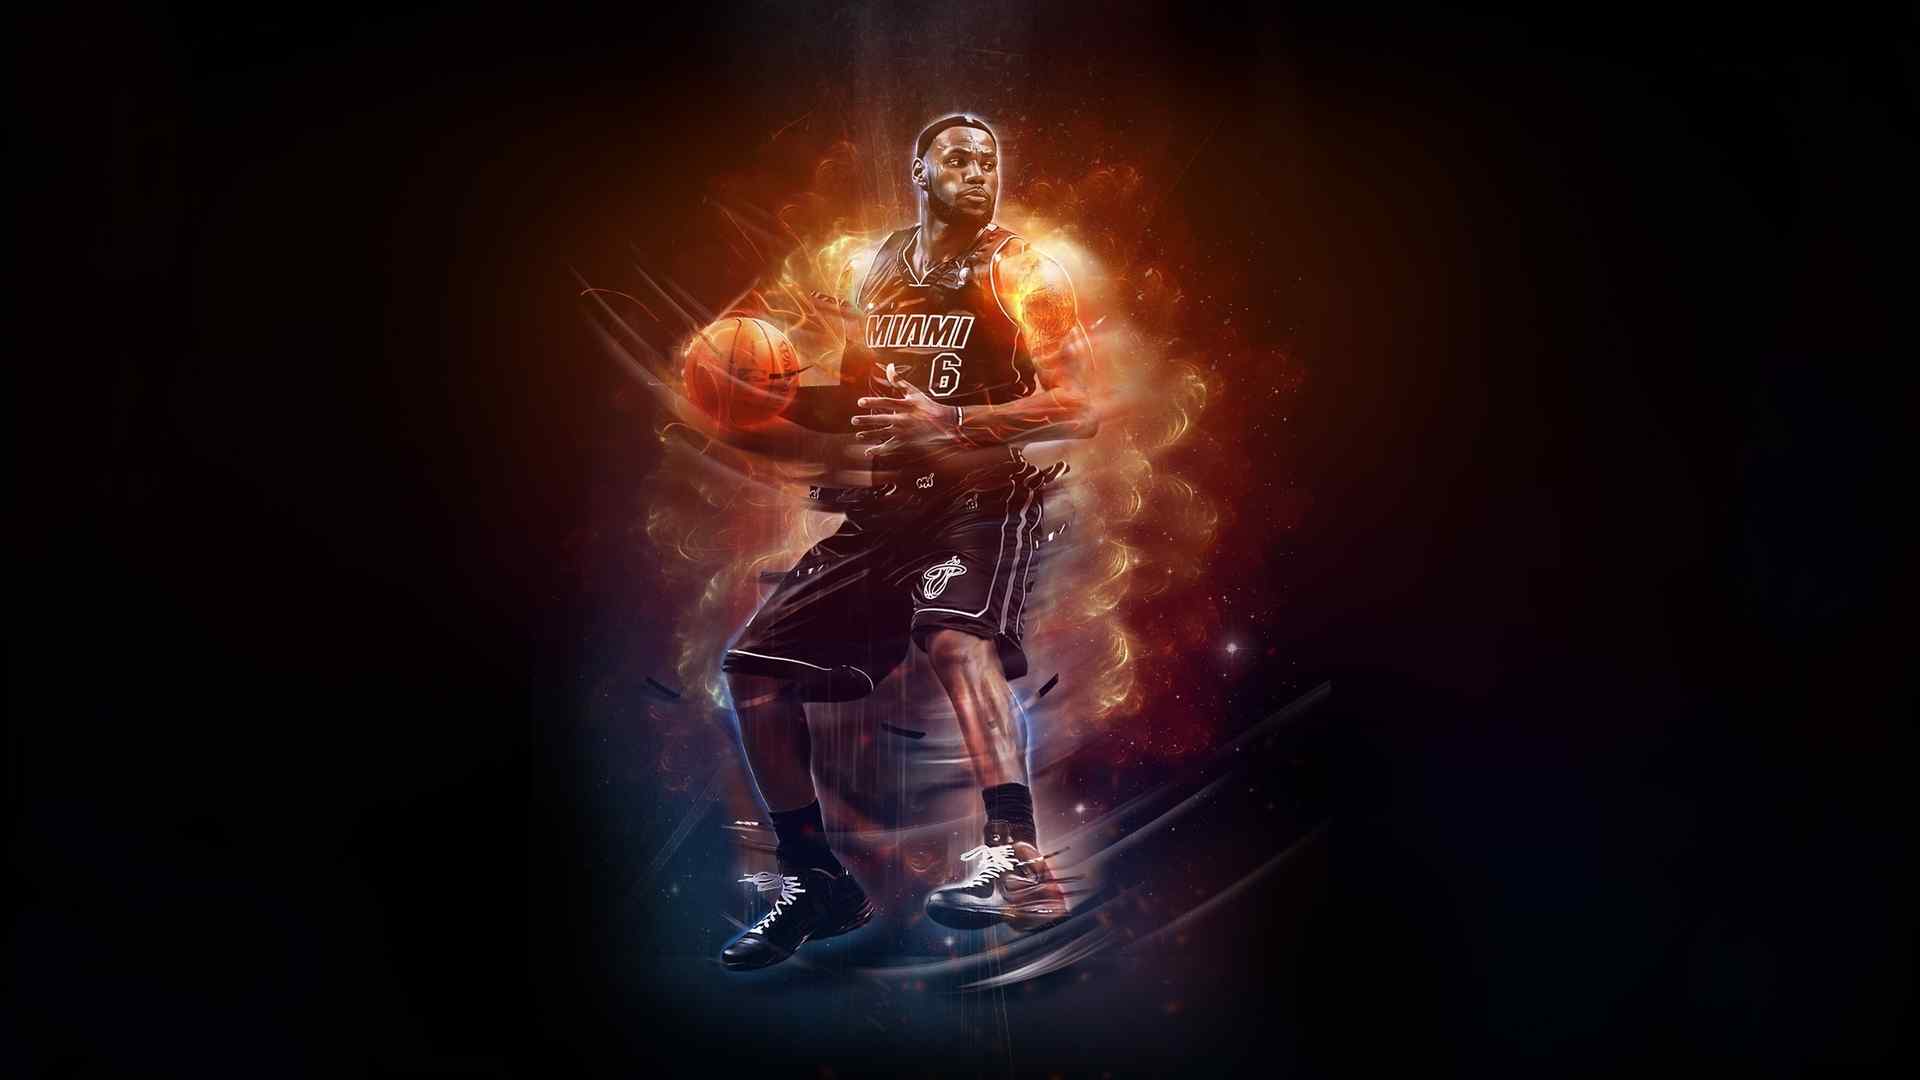 NBA篮球明星詹姆斯帅气写真桌面壁纸高清